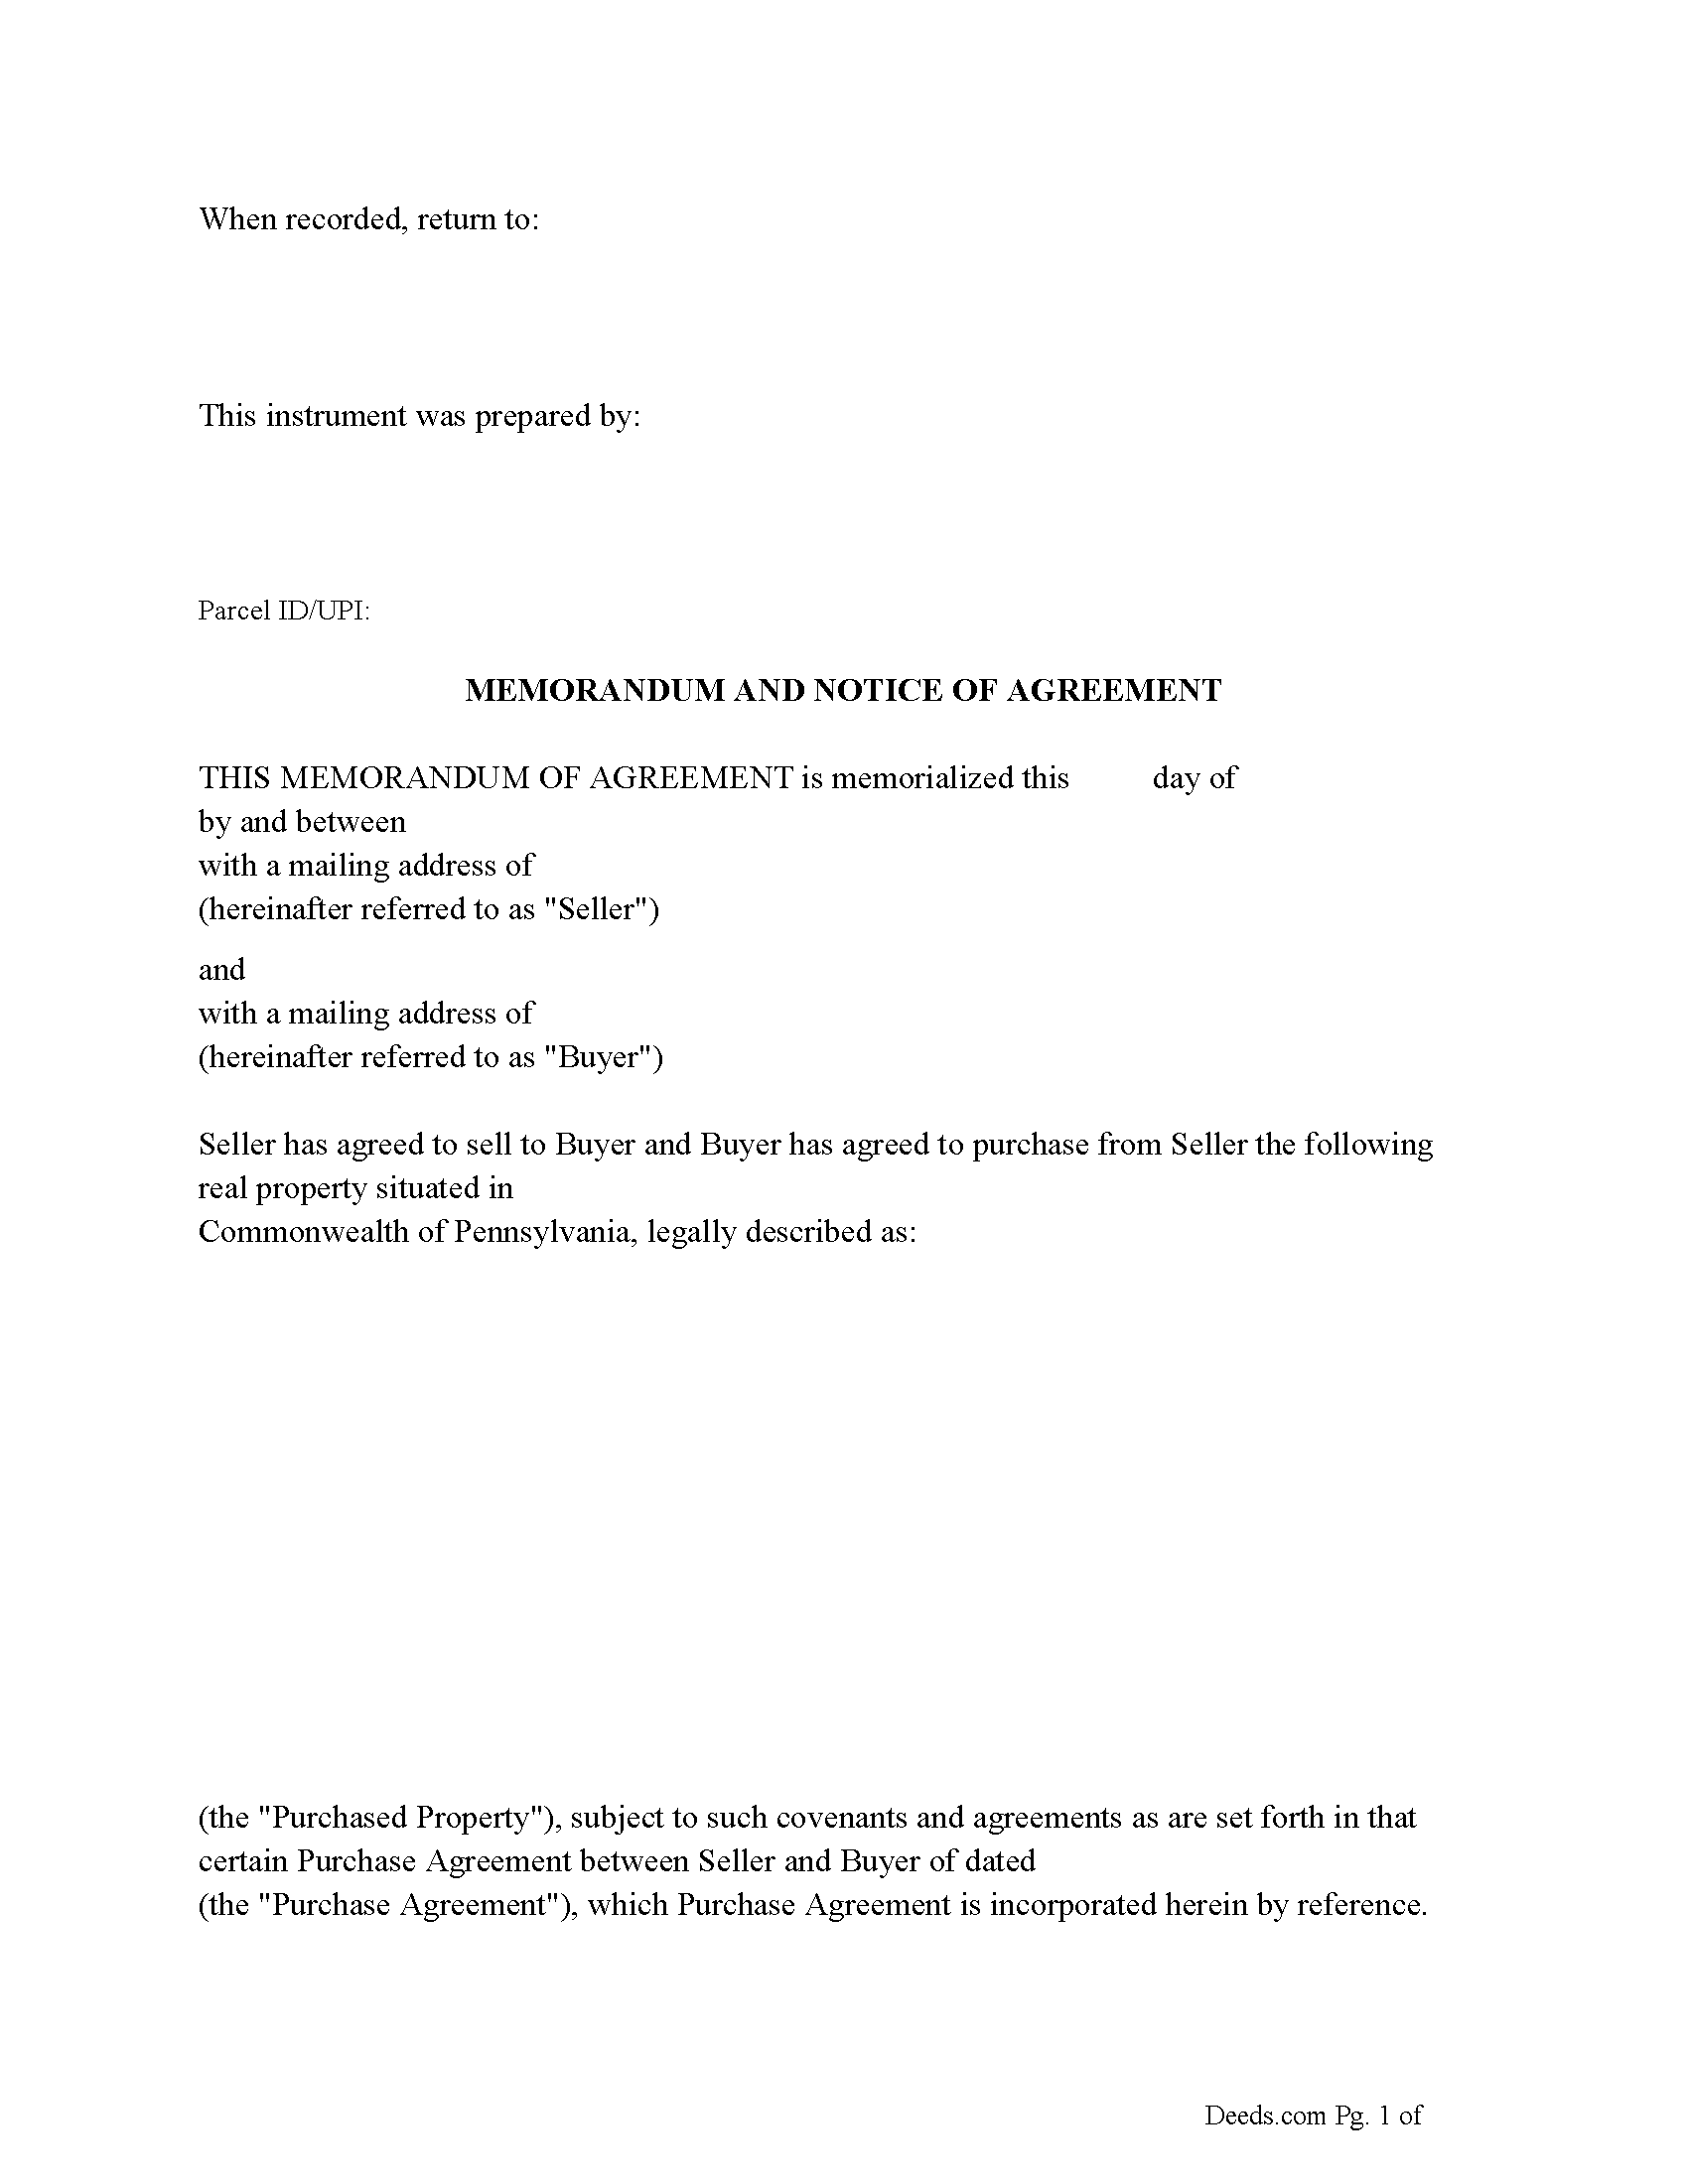 Memorandum and Notice of Agreement